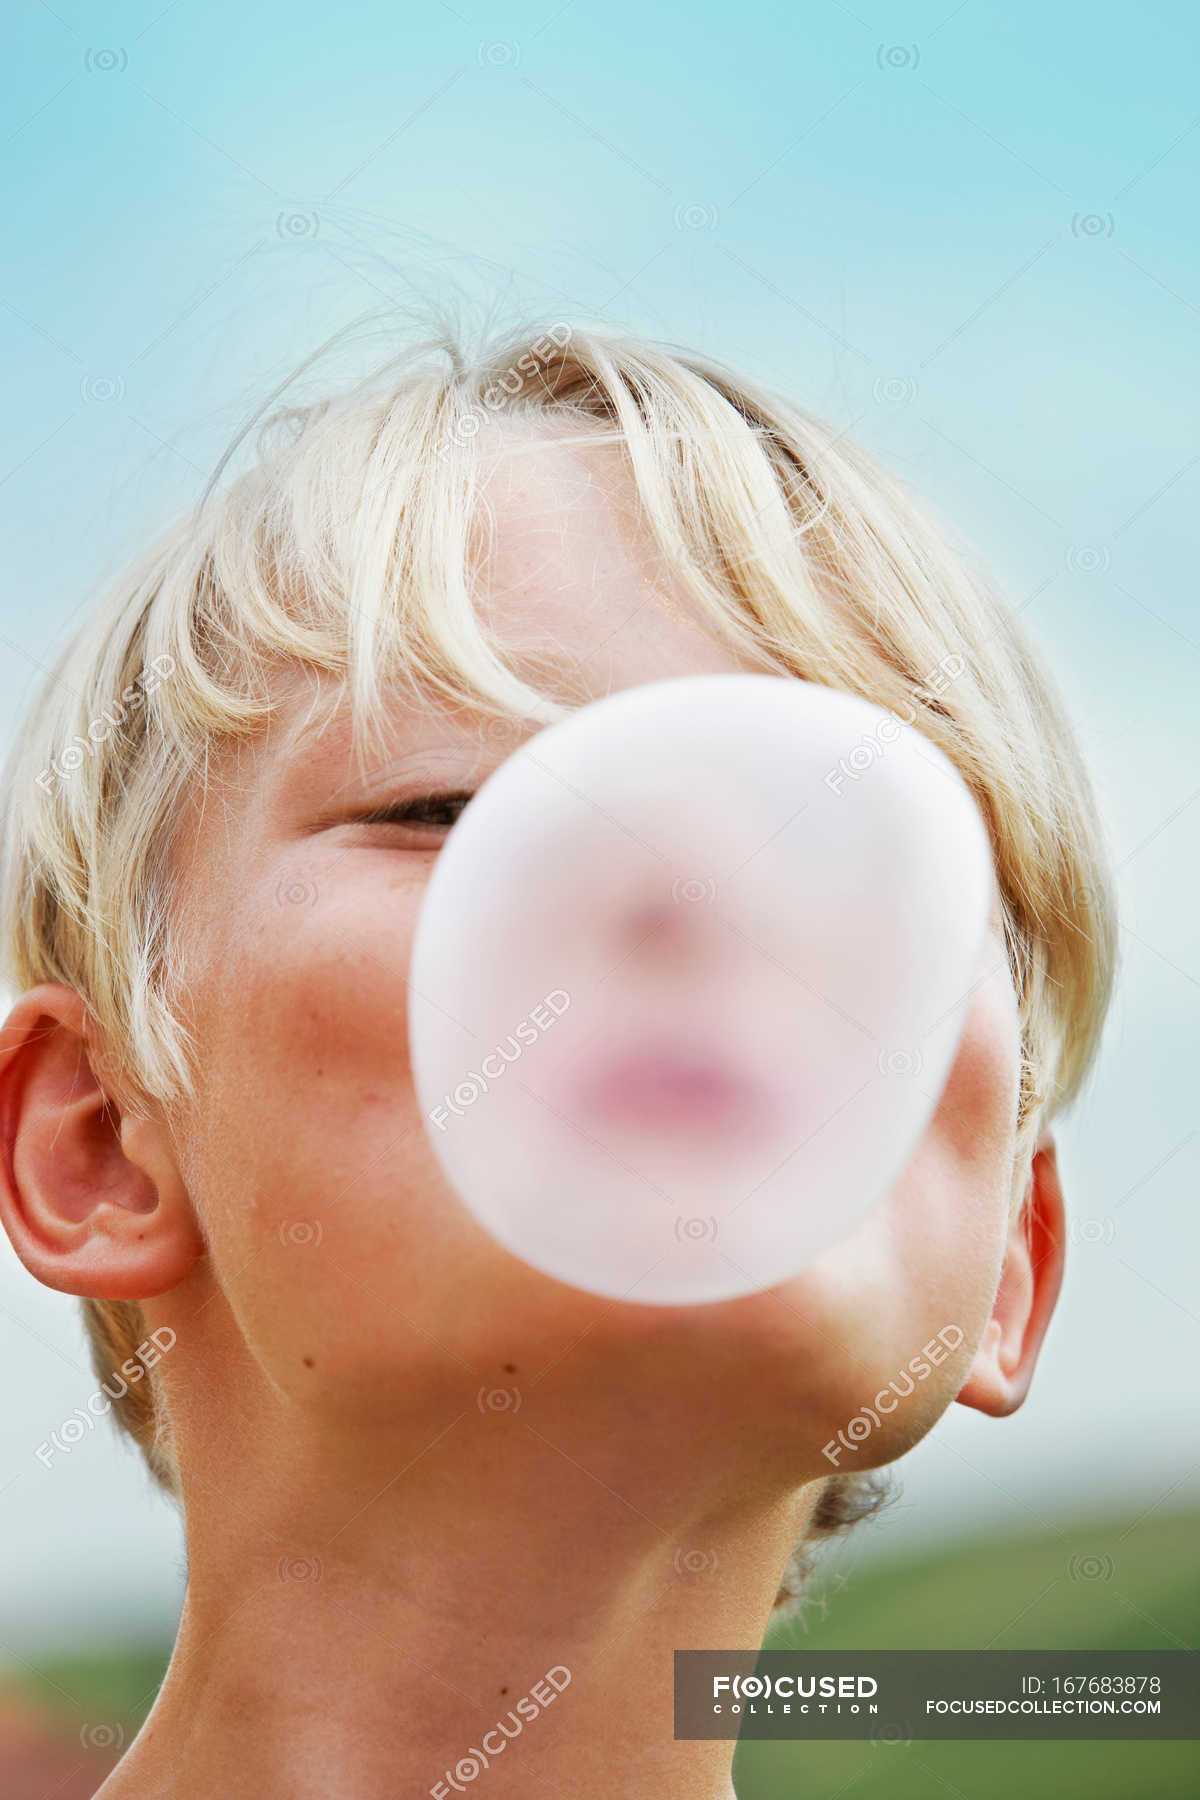 Игры с мыльными пузырями: что можно придумать